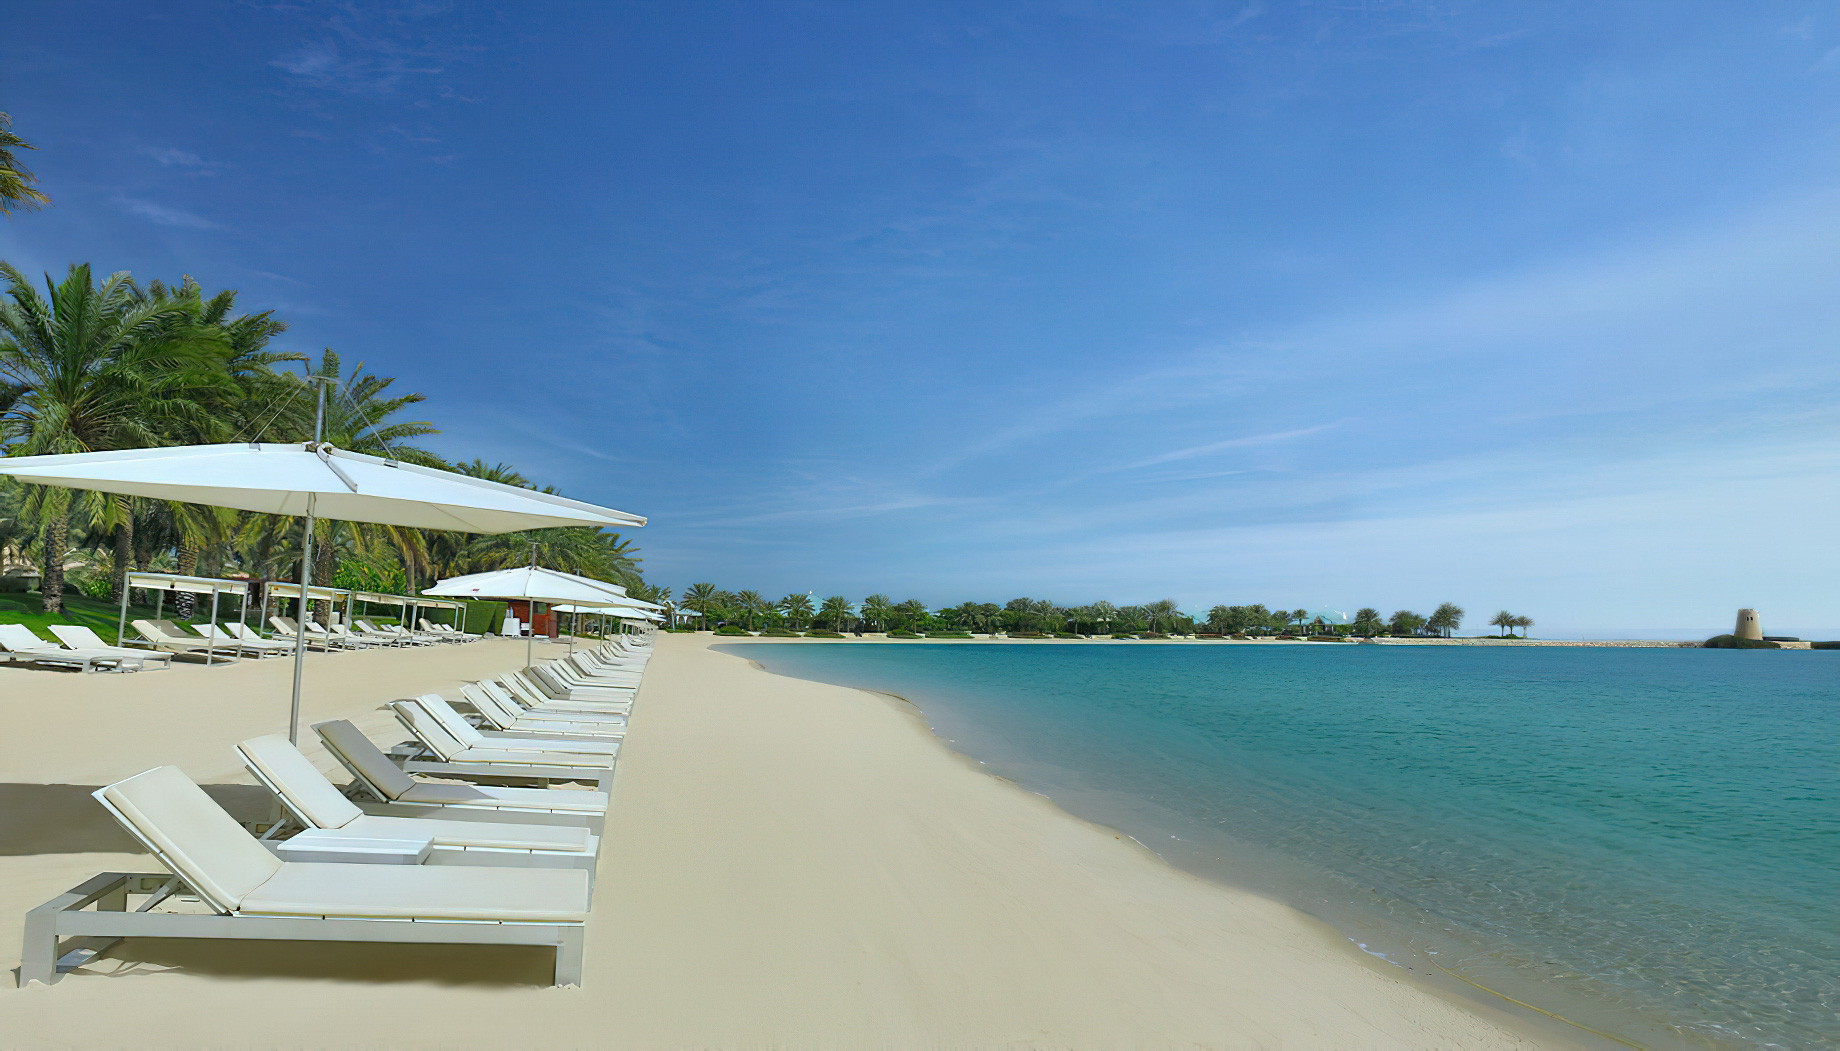 The Ritz-Carlton, Bahrain Resort Hotel – Manama, Bahrain – The Royal Beach Club Private Beach